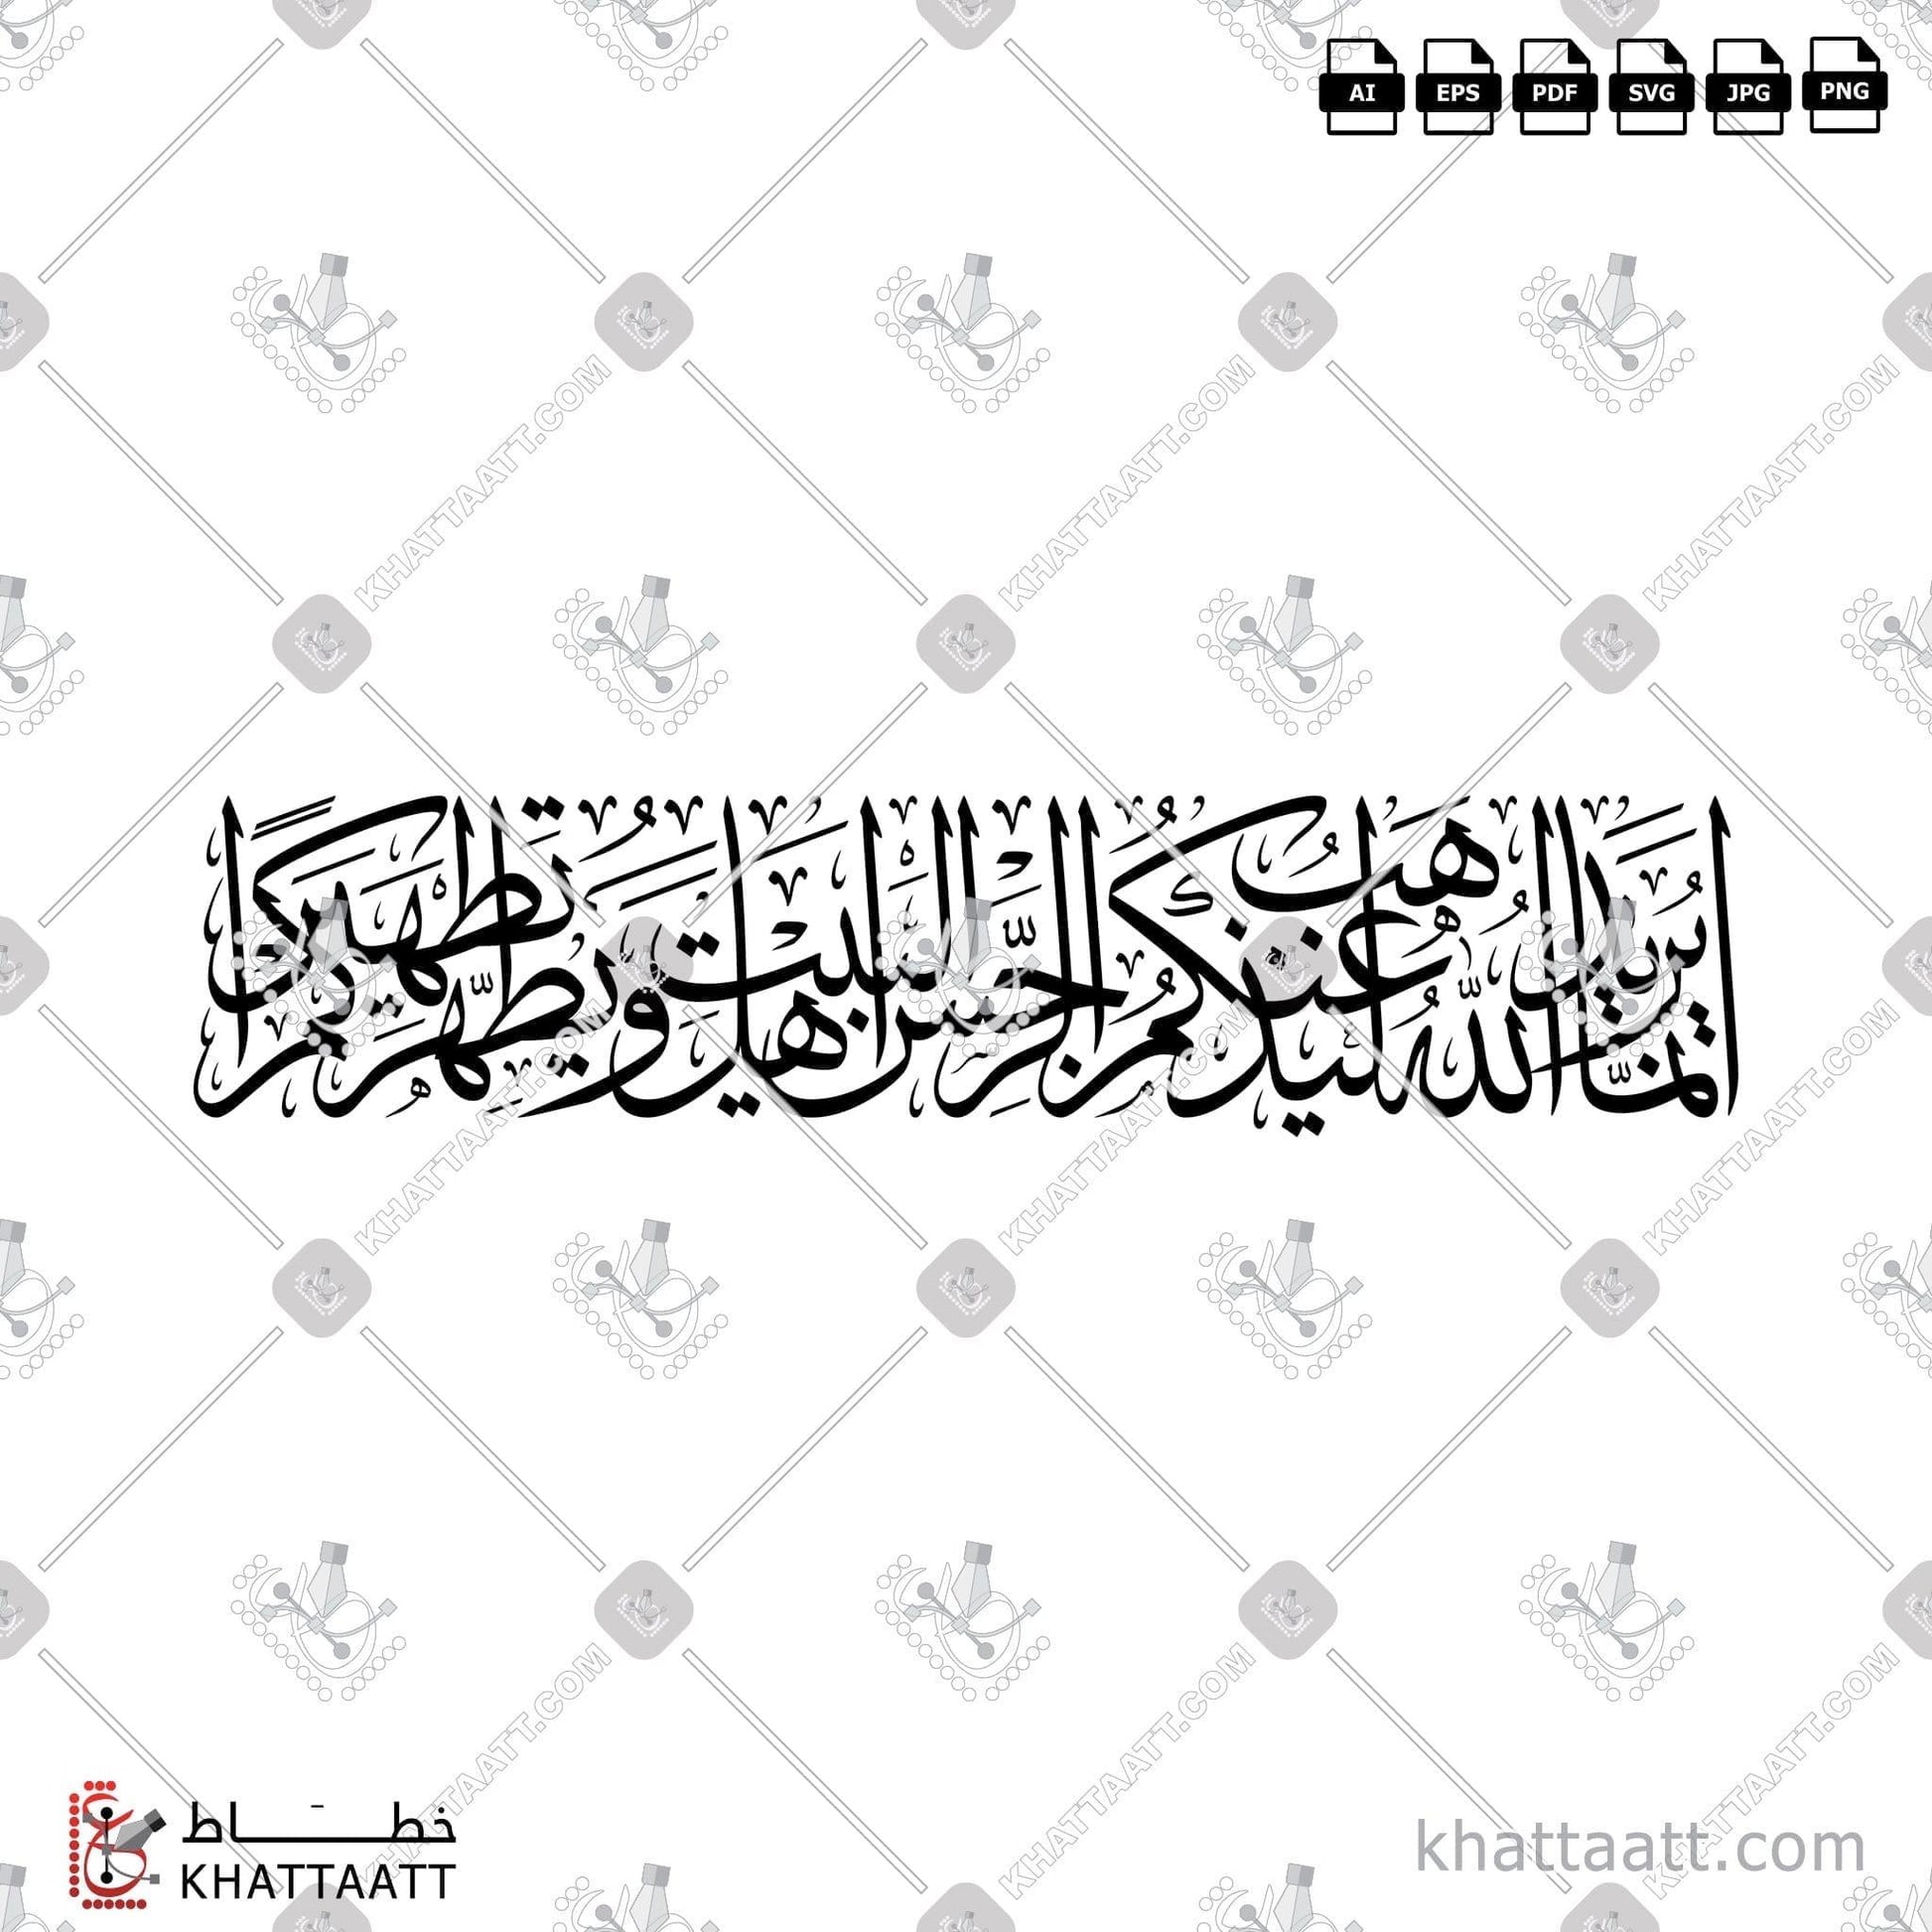 Download Arabic Calligraphy of إنما يريد الله ليذهب عنكم الرجس أهل البيت ويطهركم تطهيرا in Thuluth - خط الثلث in vector and .png